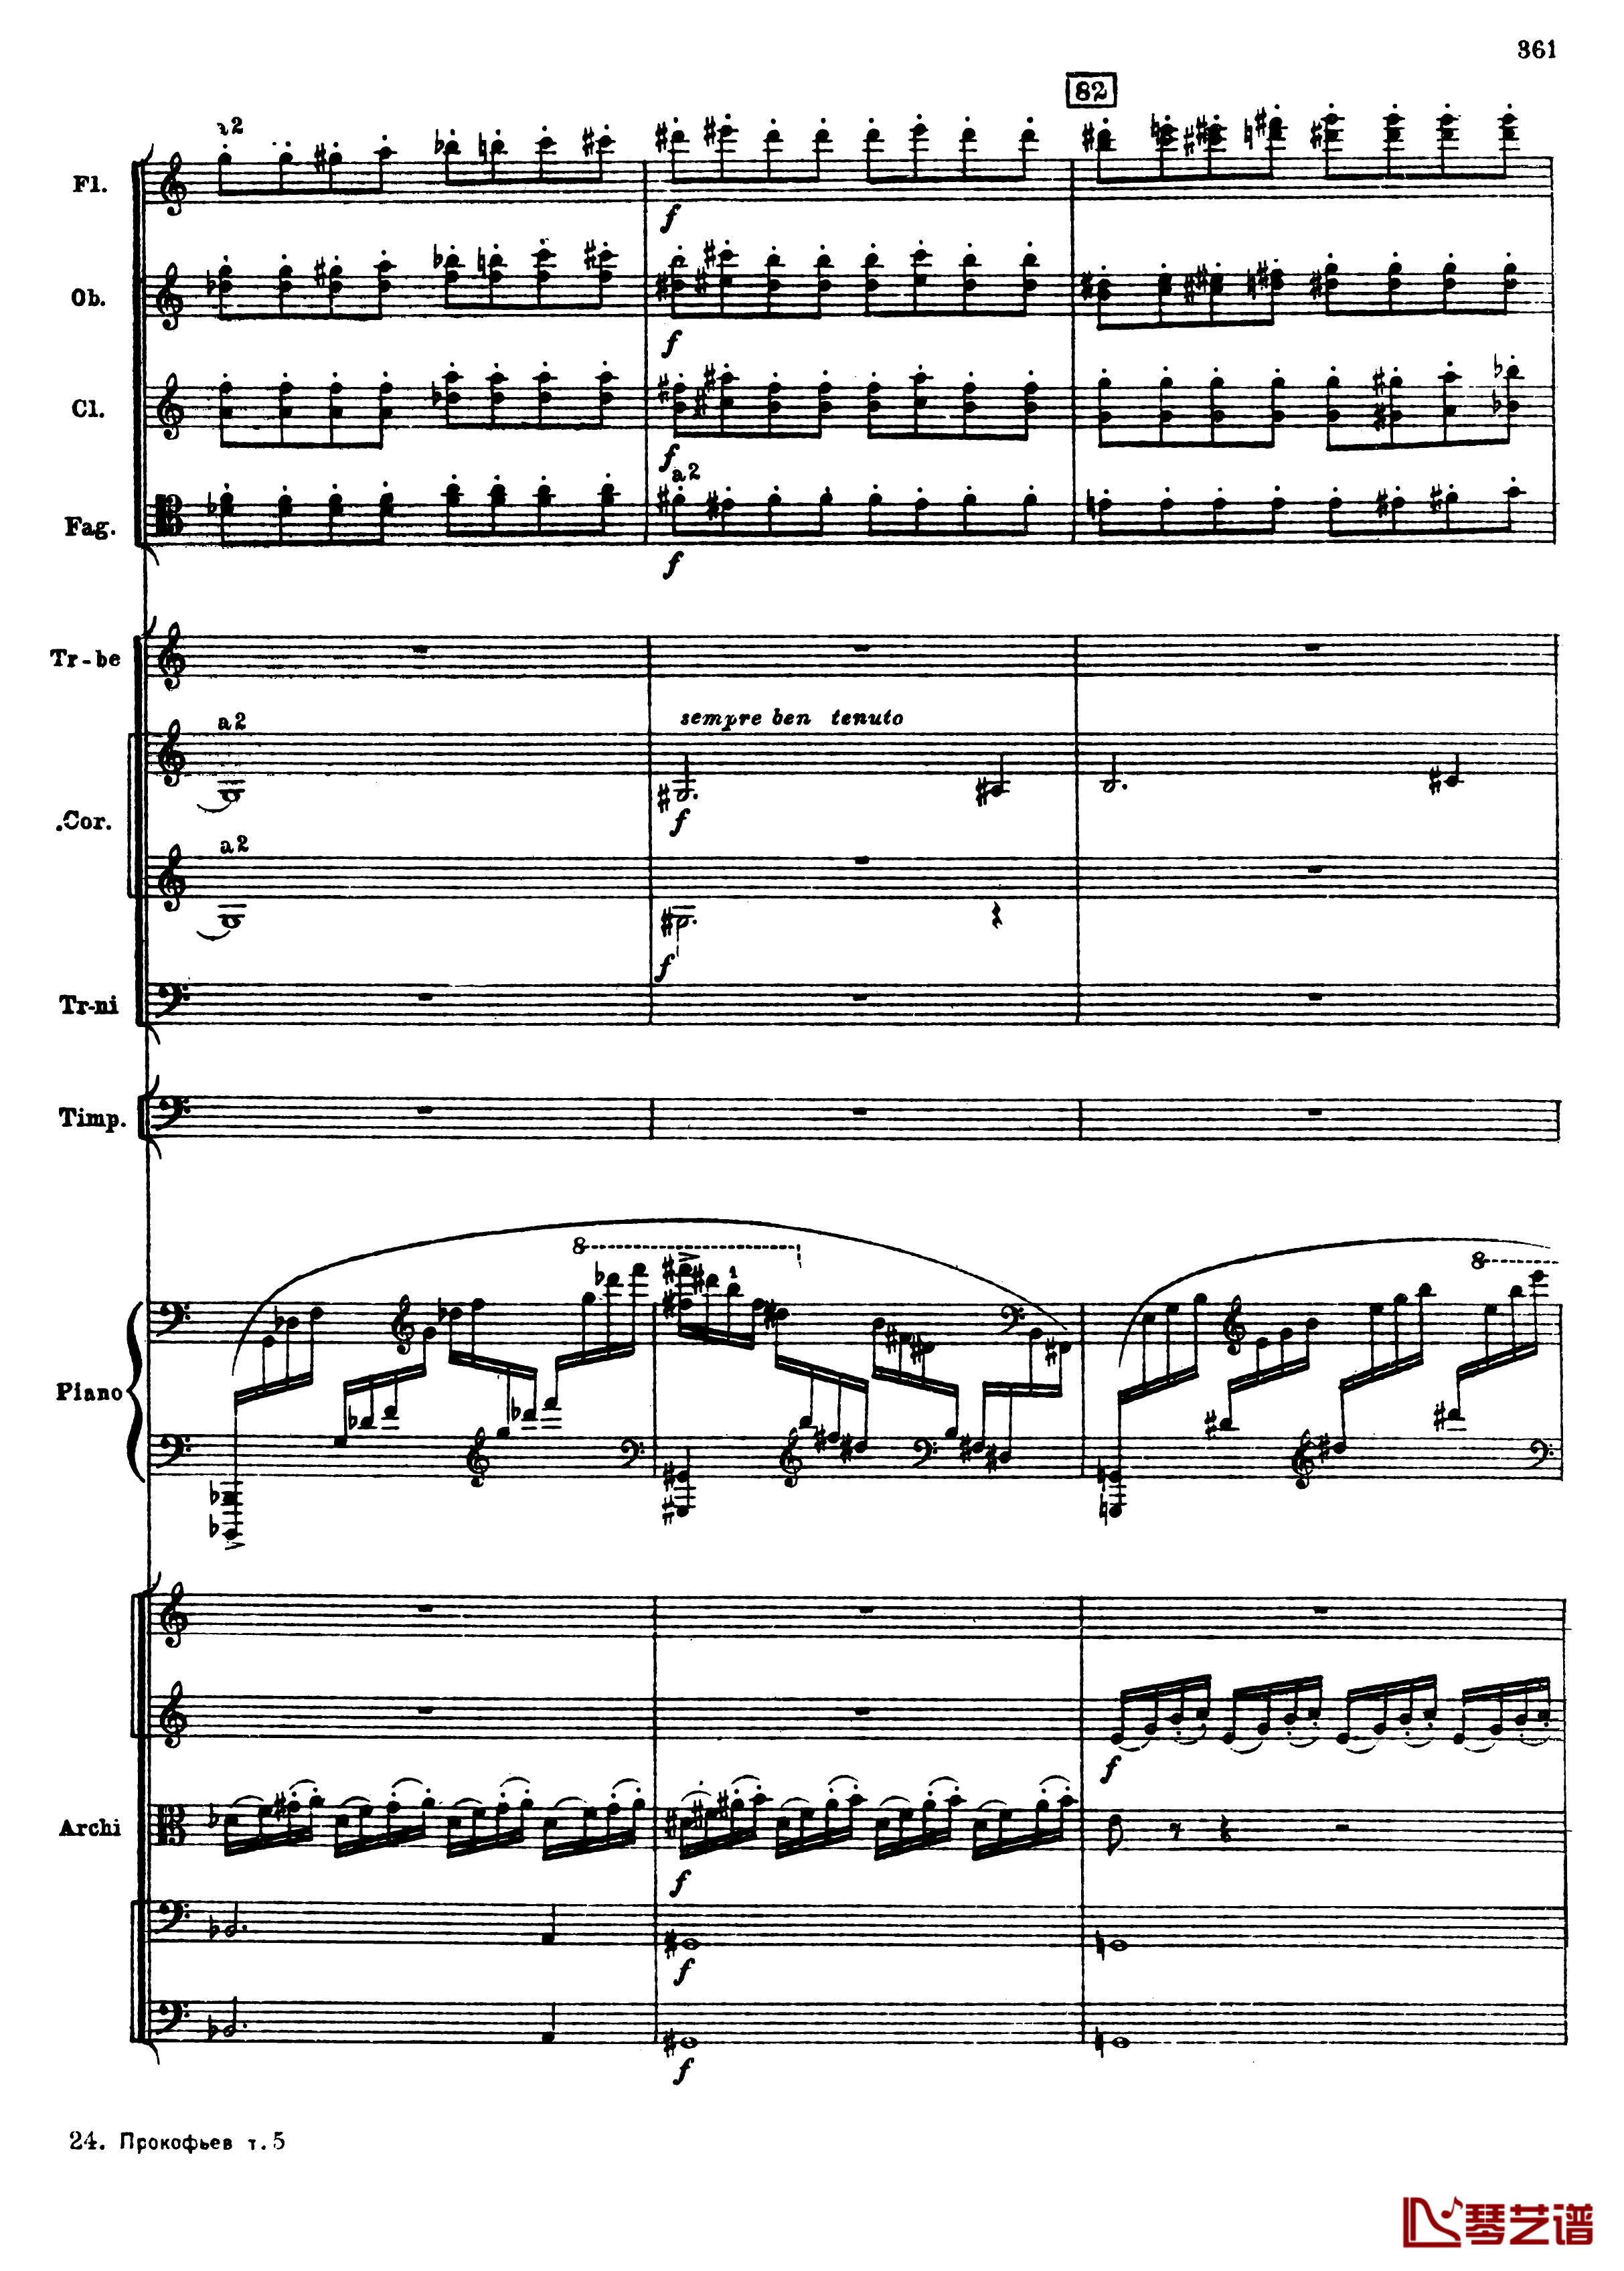 普罗科菲耶夫第三钢琴协奏曲钢琴谱-总谱-普罗科非耶夫93